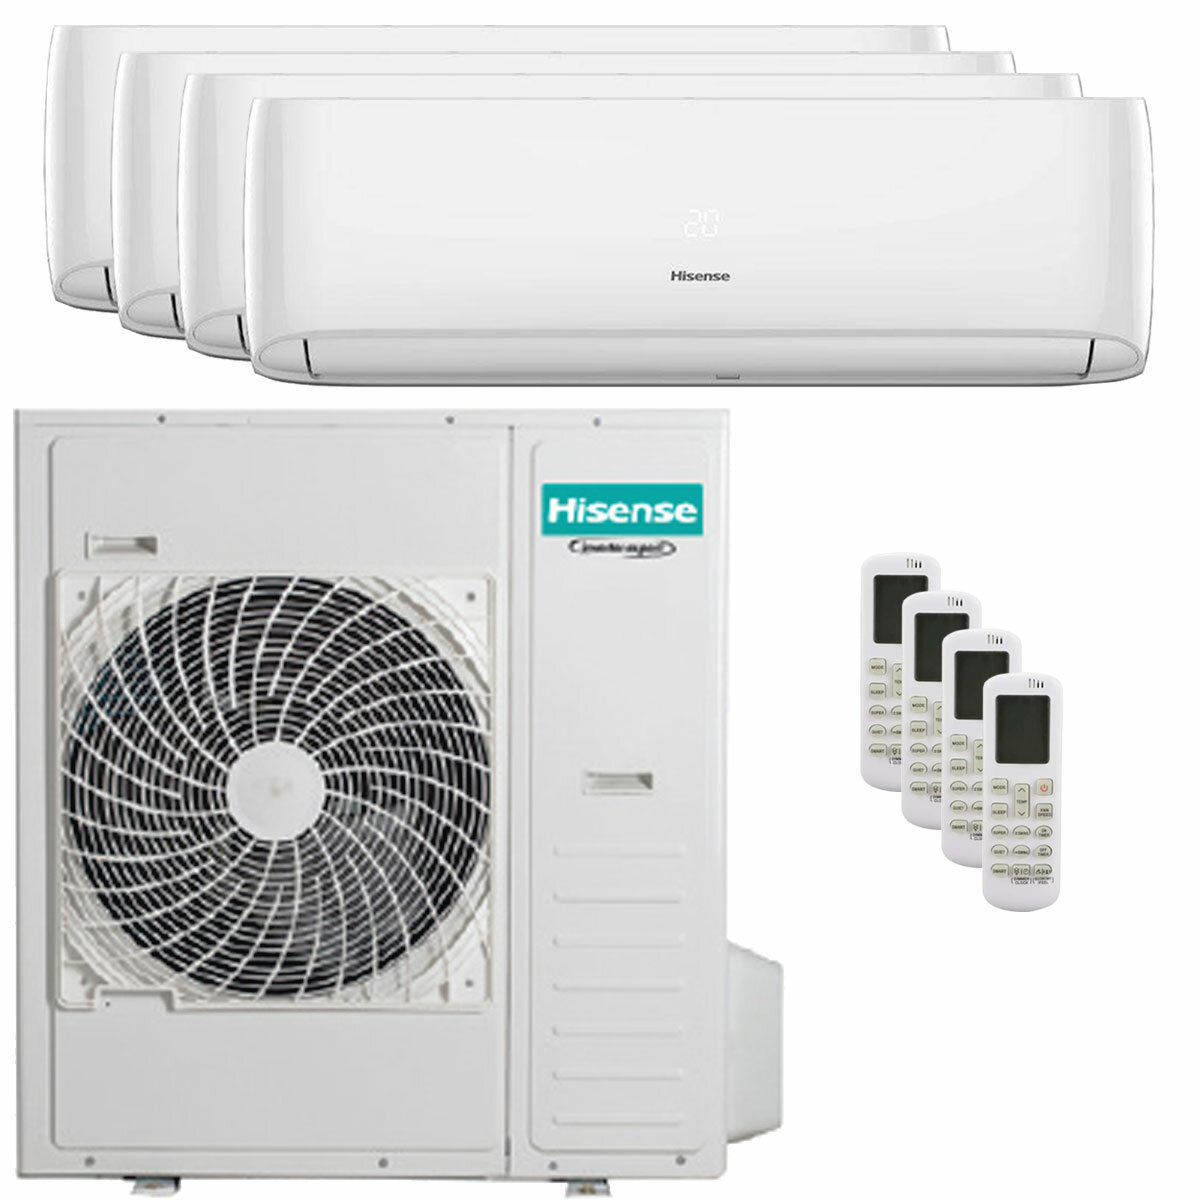 Hisense Hi-Comfort quadri split air conditioner 7000 + 7000 + 12000 + 24000 BTU wifi inverter outdoor unit 12.5 kW